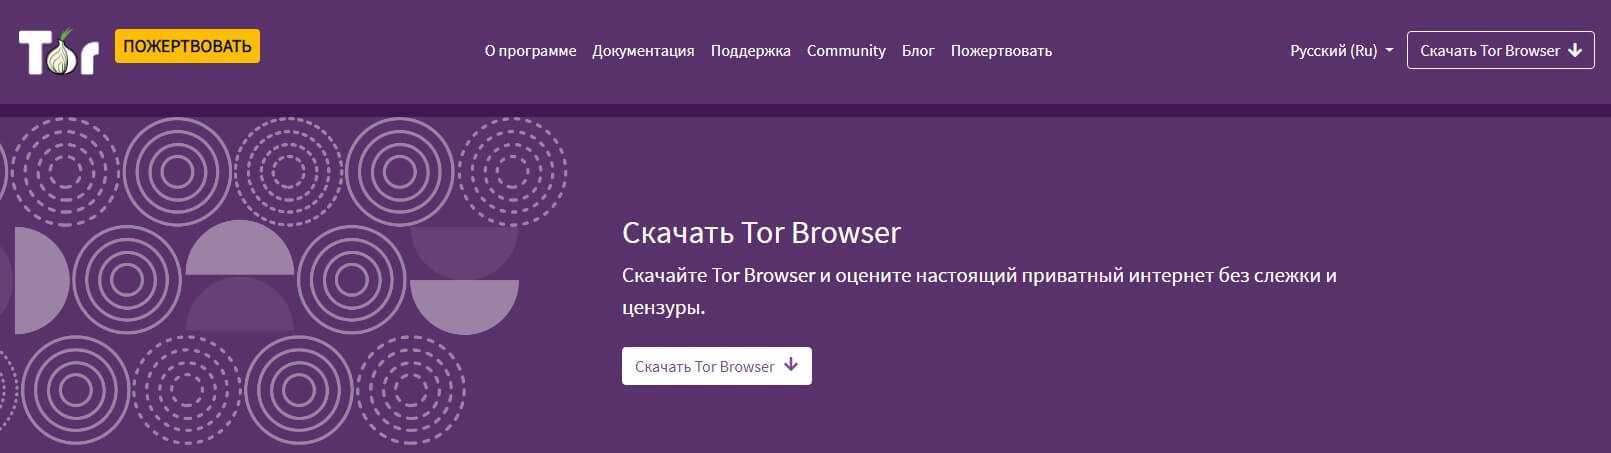 Как попасть в даркнет. ссылки на сайты в darknet - setiwik.ru